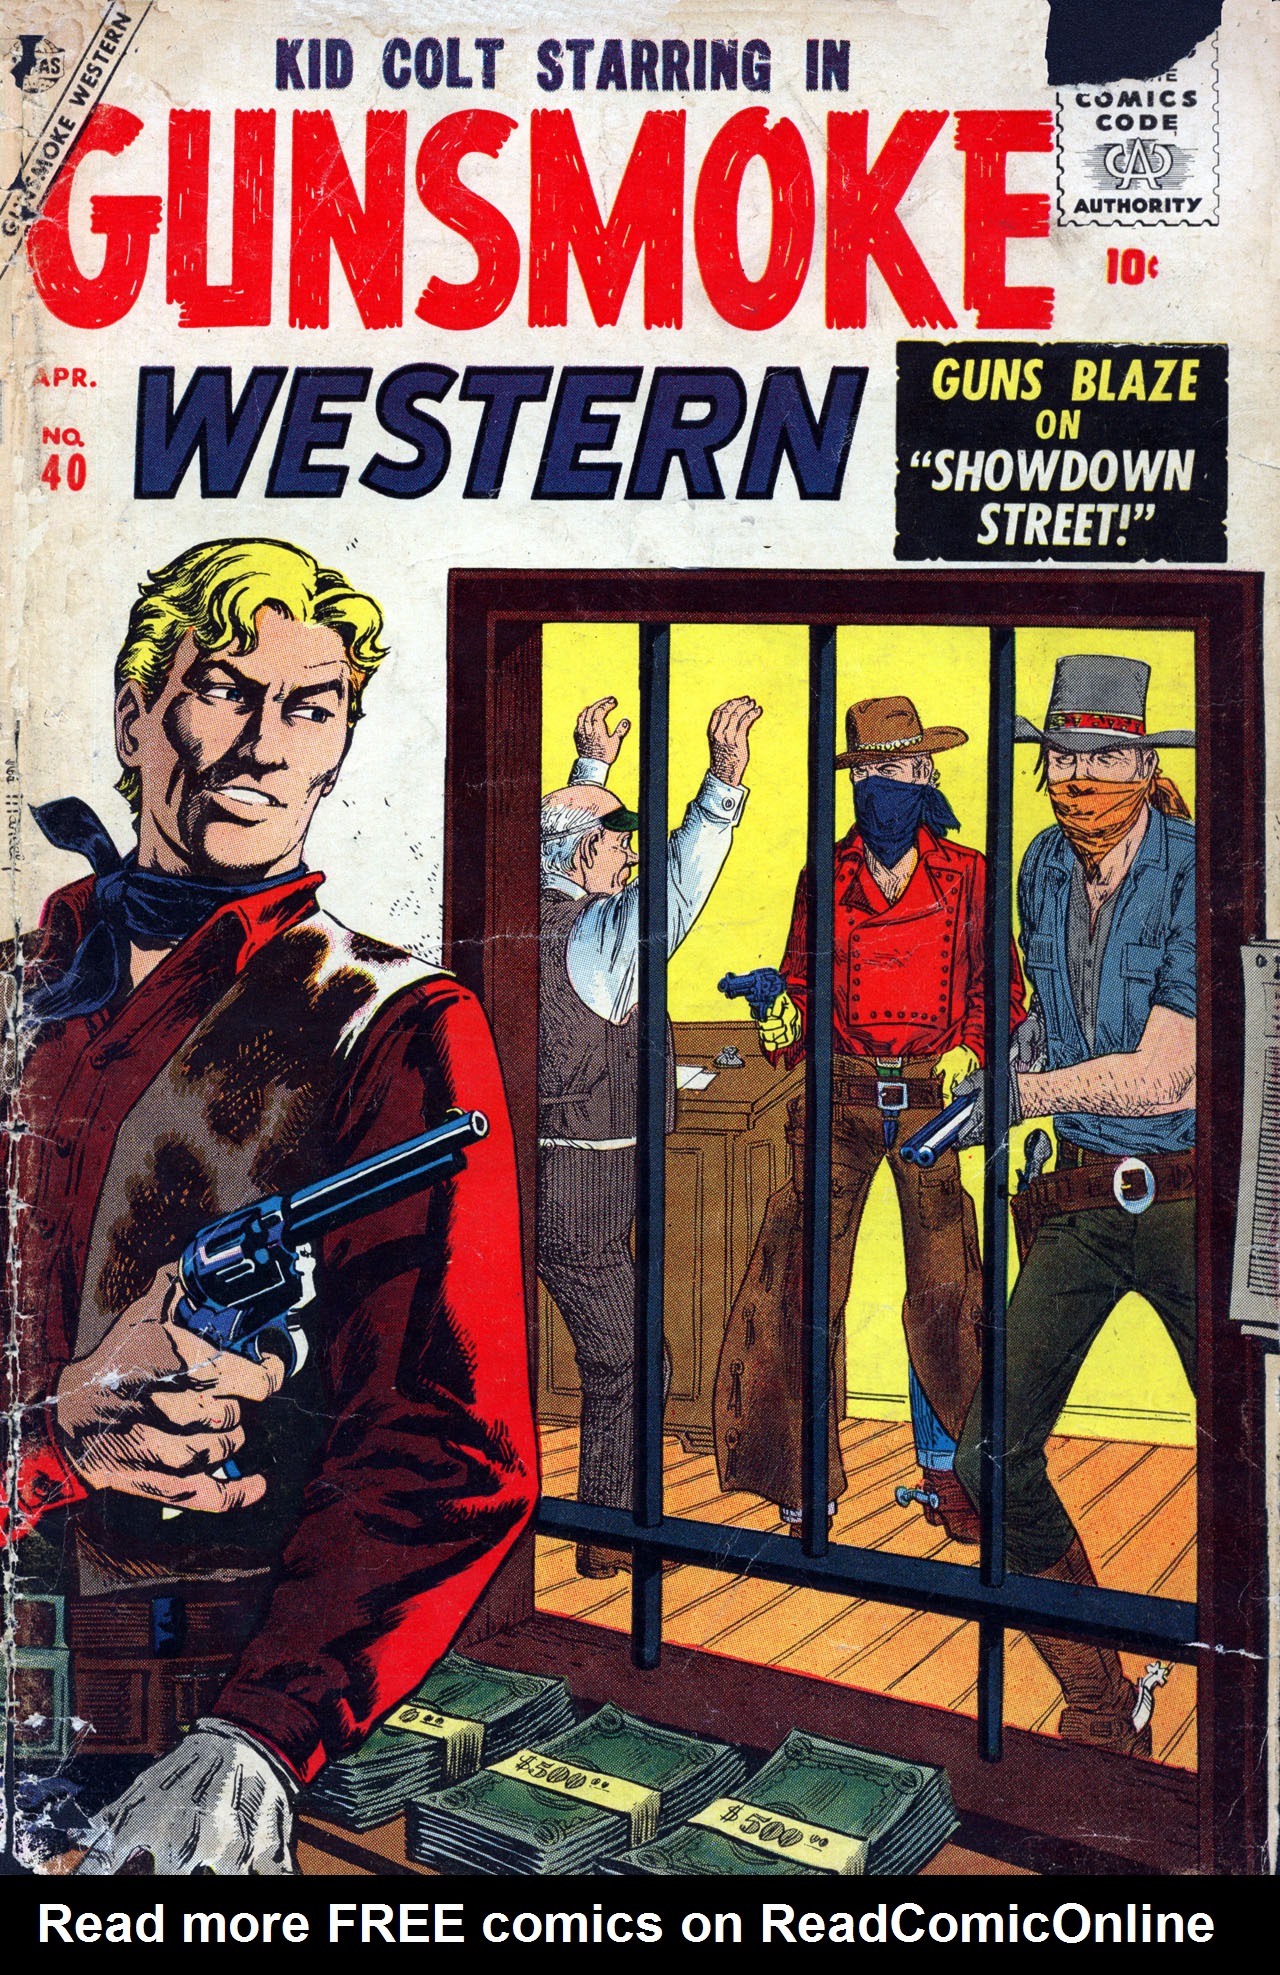 Read online Gunsmoke Western comic -  Issue #40 - 1